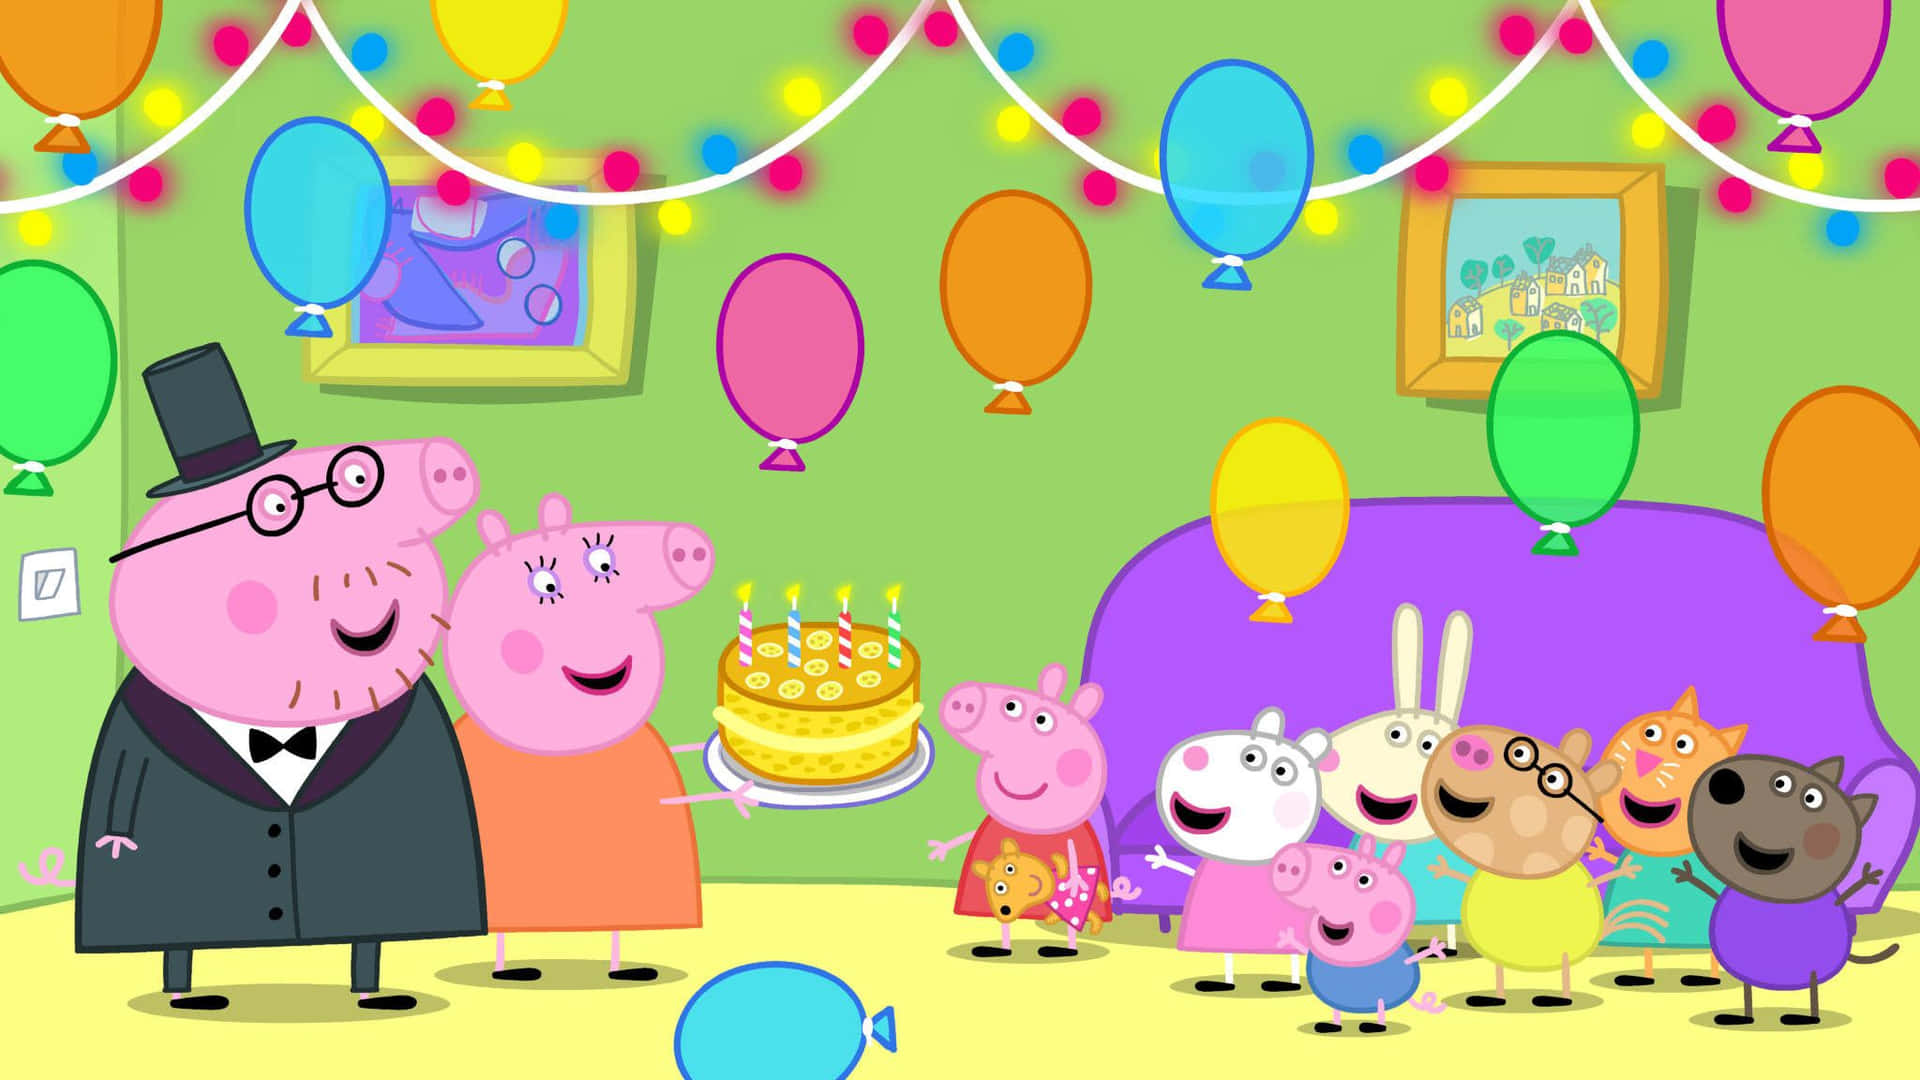 Geburtstagspartypeppa Pig Hintergrund